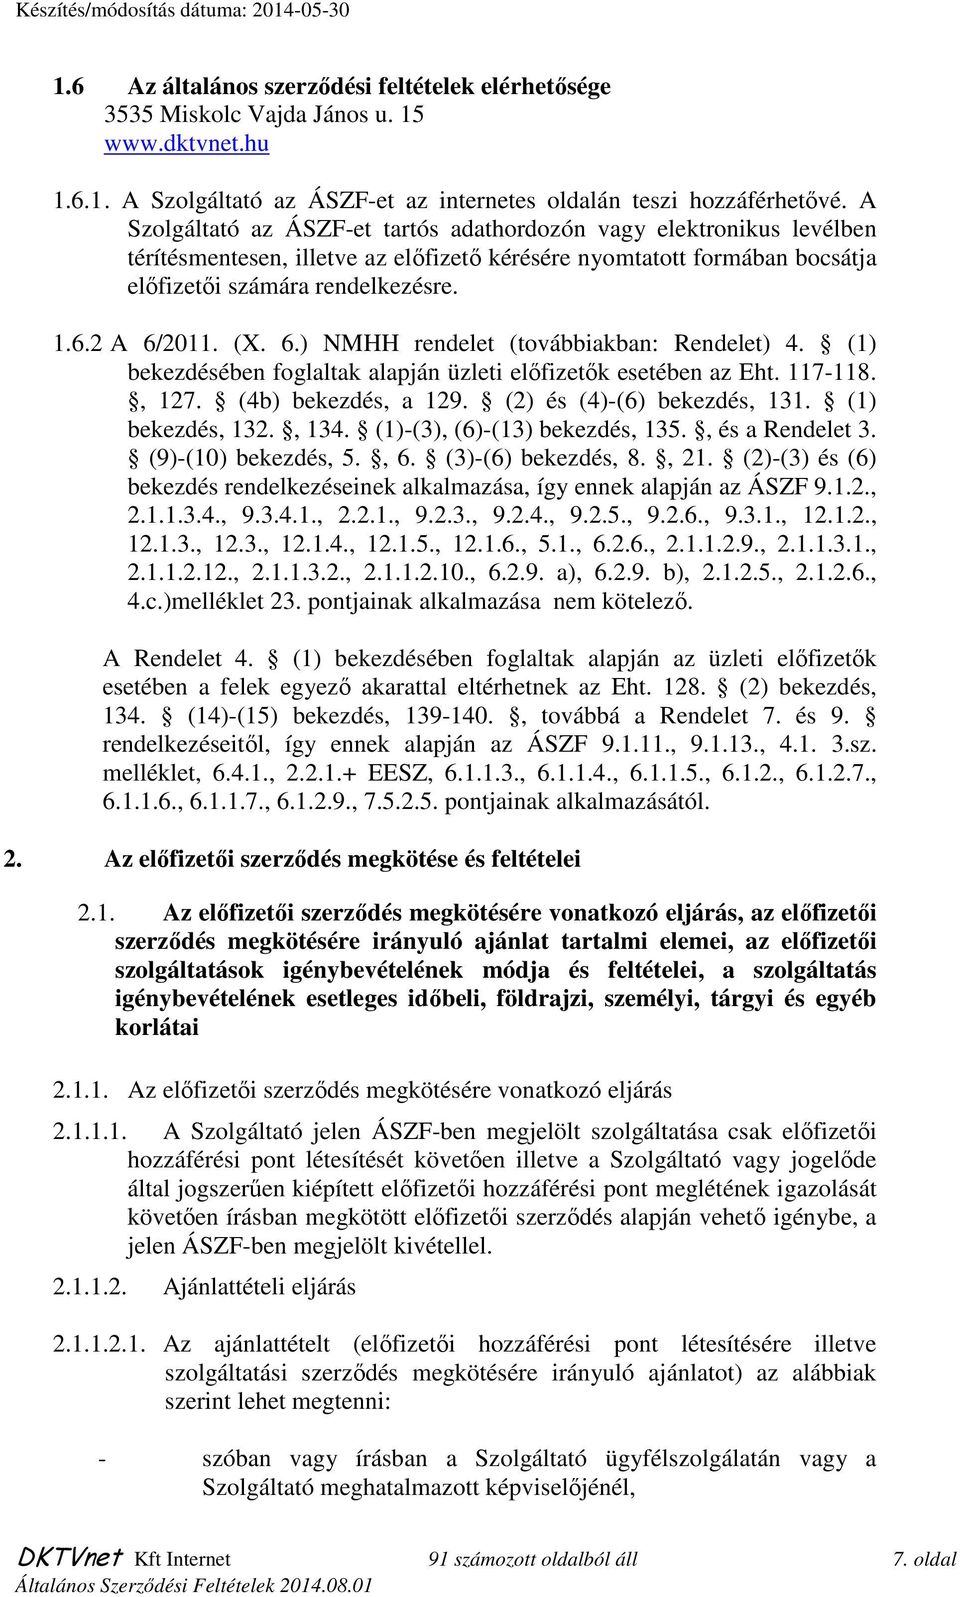 (X. 6.) NMHH rendelet (továbbiakban: Rendelet) 4. (1) bekezdésében foglaltak alapján üzleti elıfizetık esetében az Eht. 117-118., 127. (4b) bekezdés, a 129. (2) és (4)-(6) bekezdés, 131.